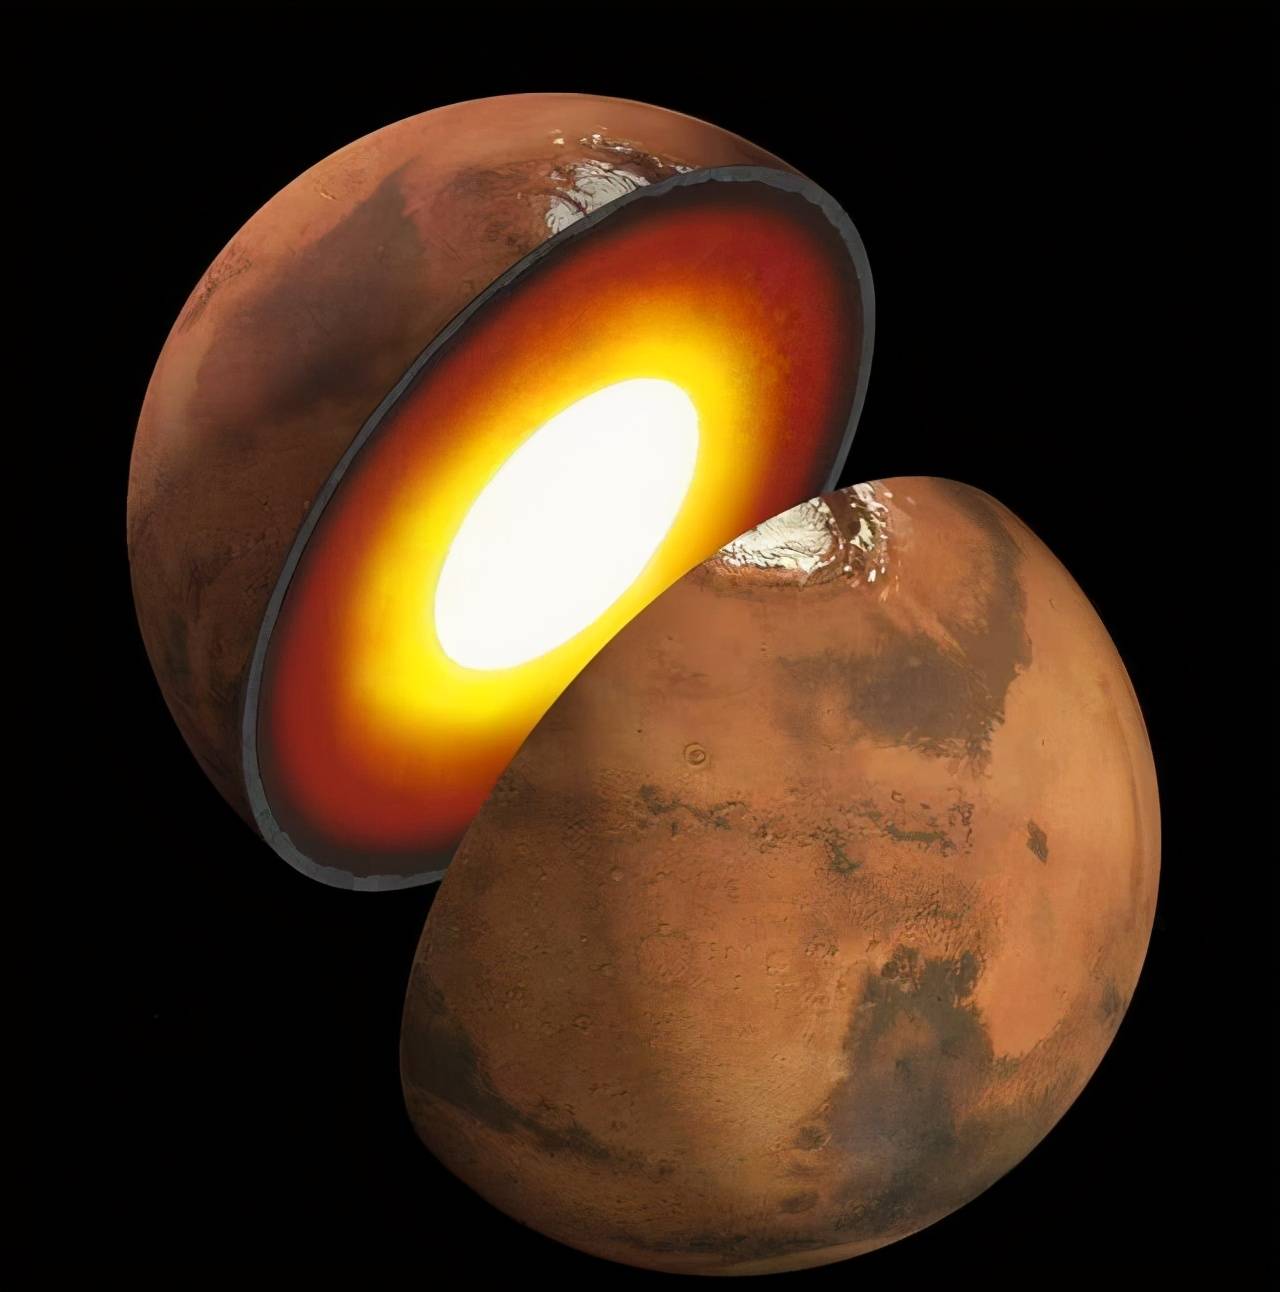 改造火星第一步就是重建火星磁场否则向火星移民就是找死